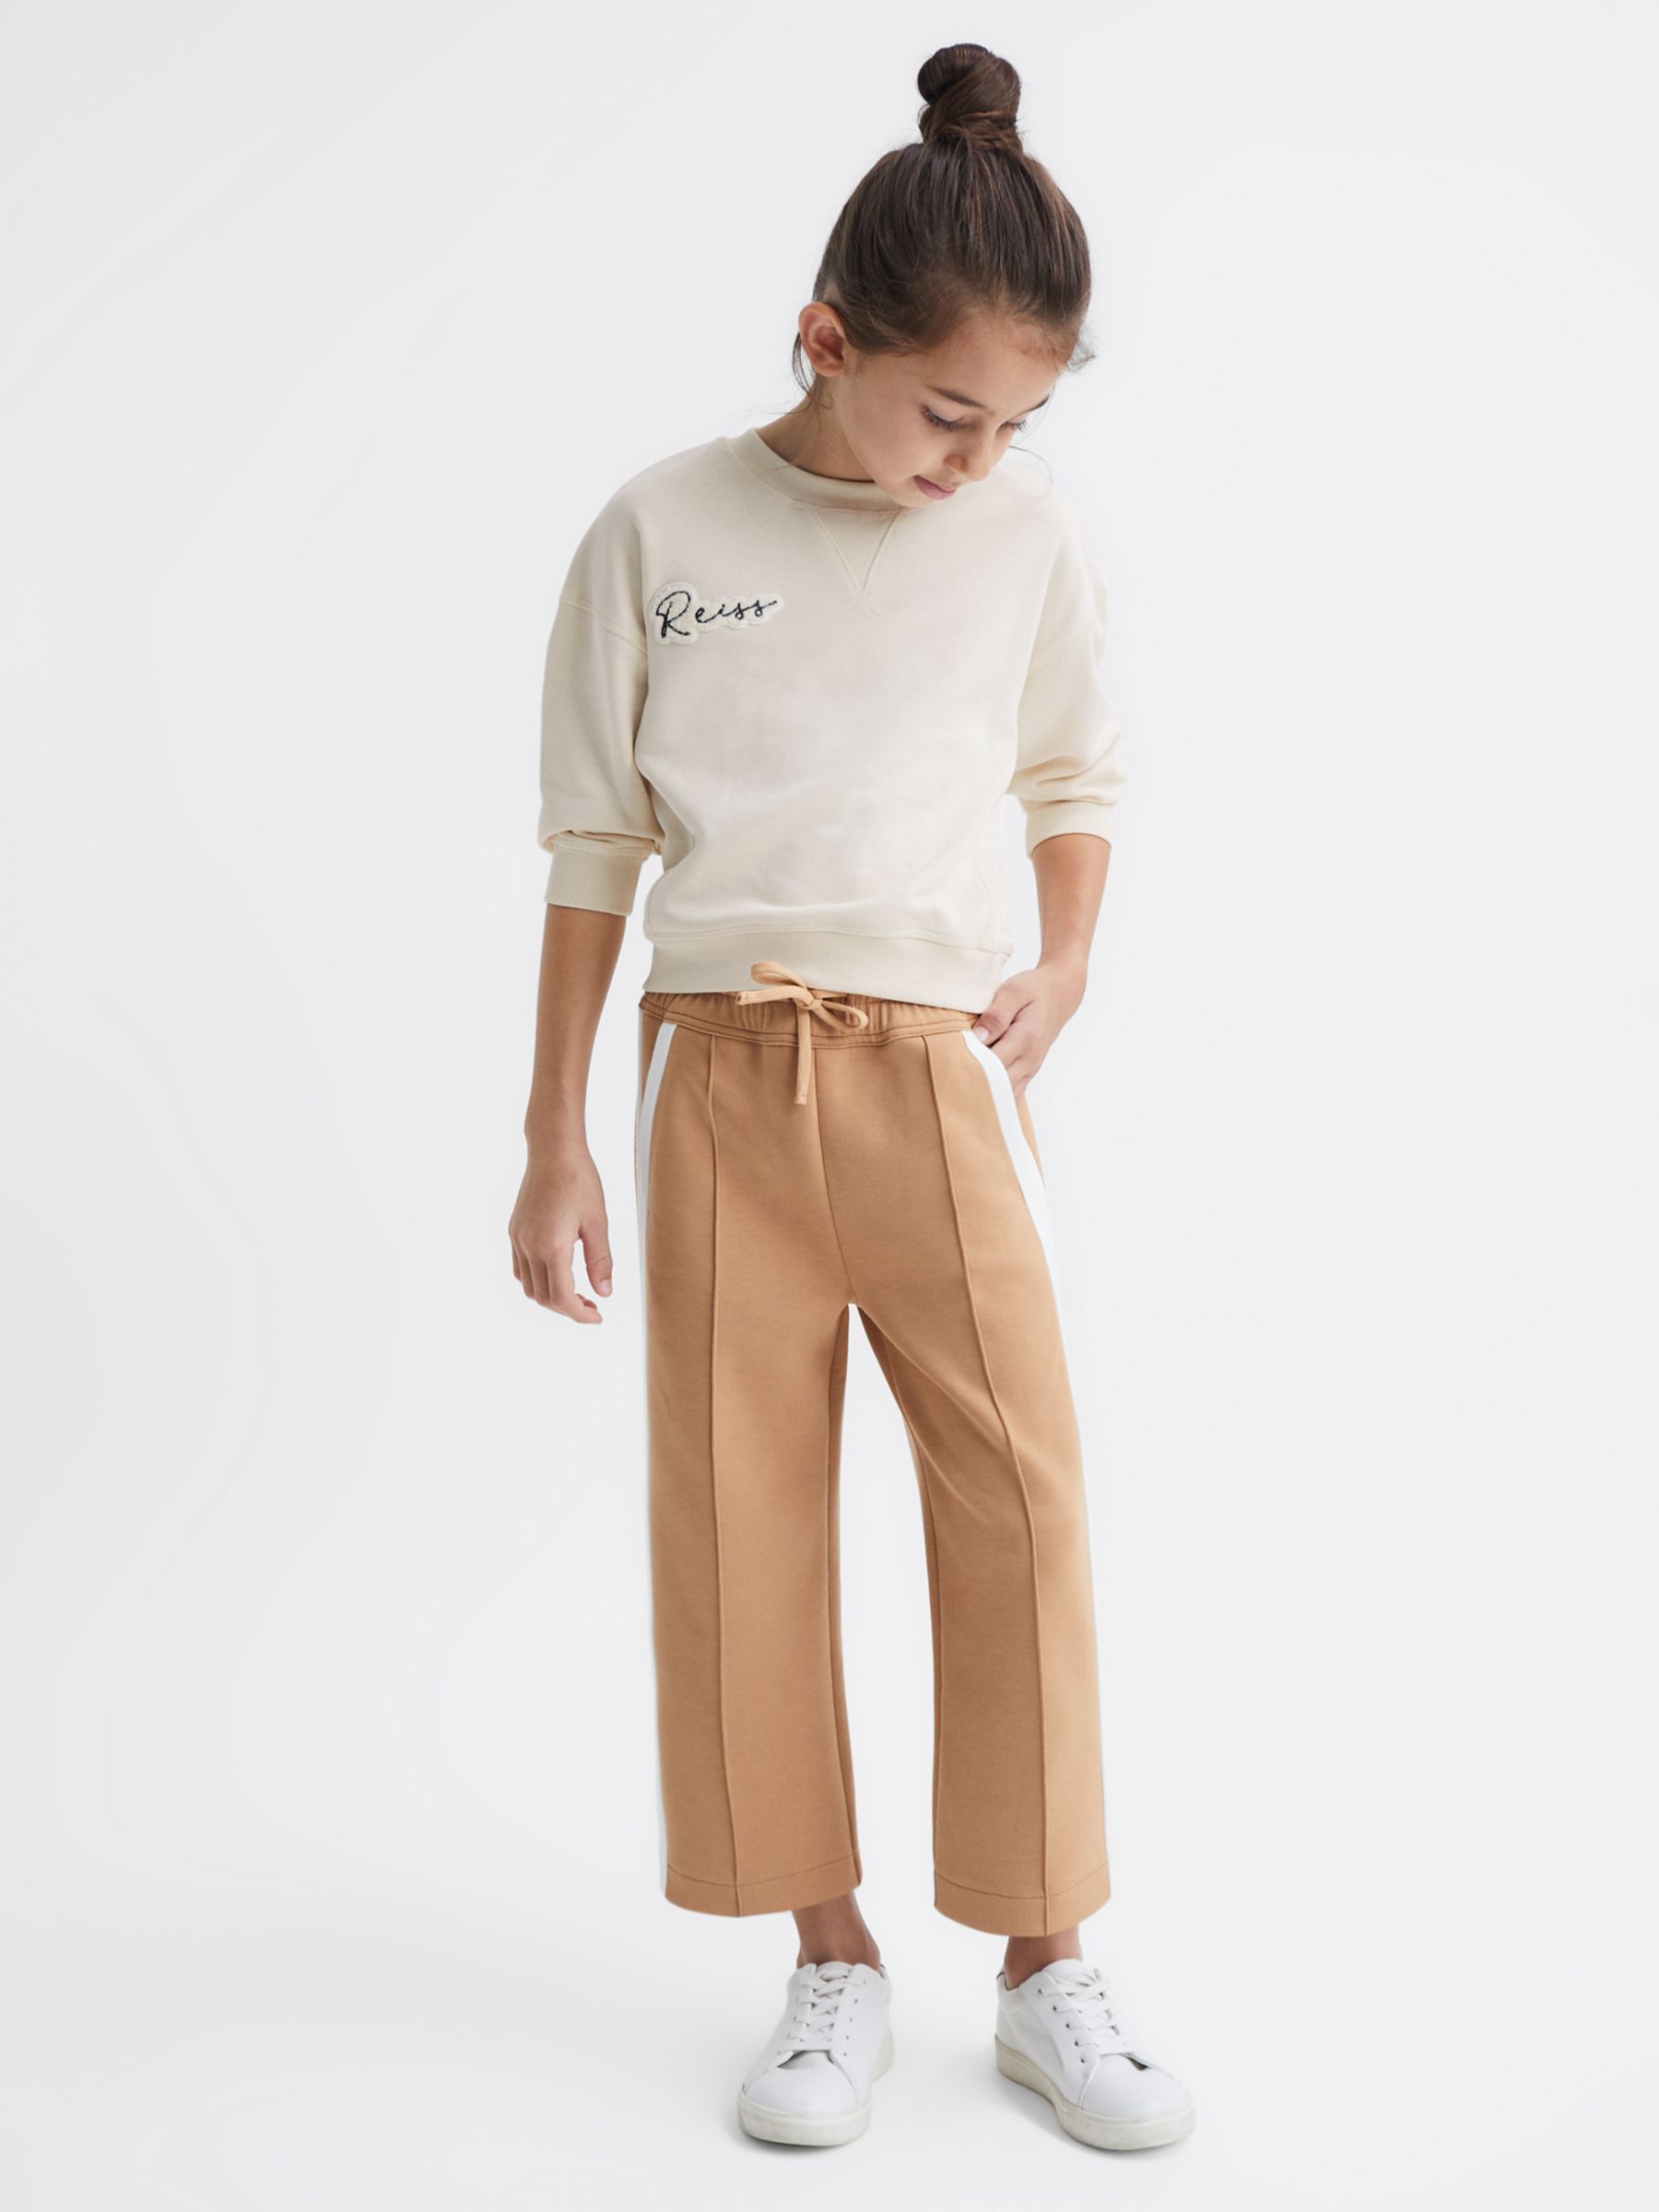 Reiss Kids' Tegan Side Stripe Jersey Trousers, Camel/White